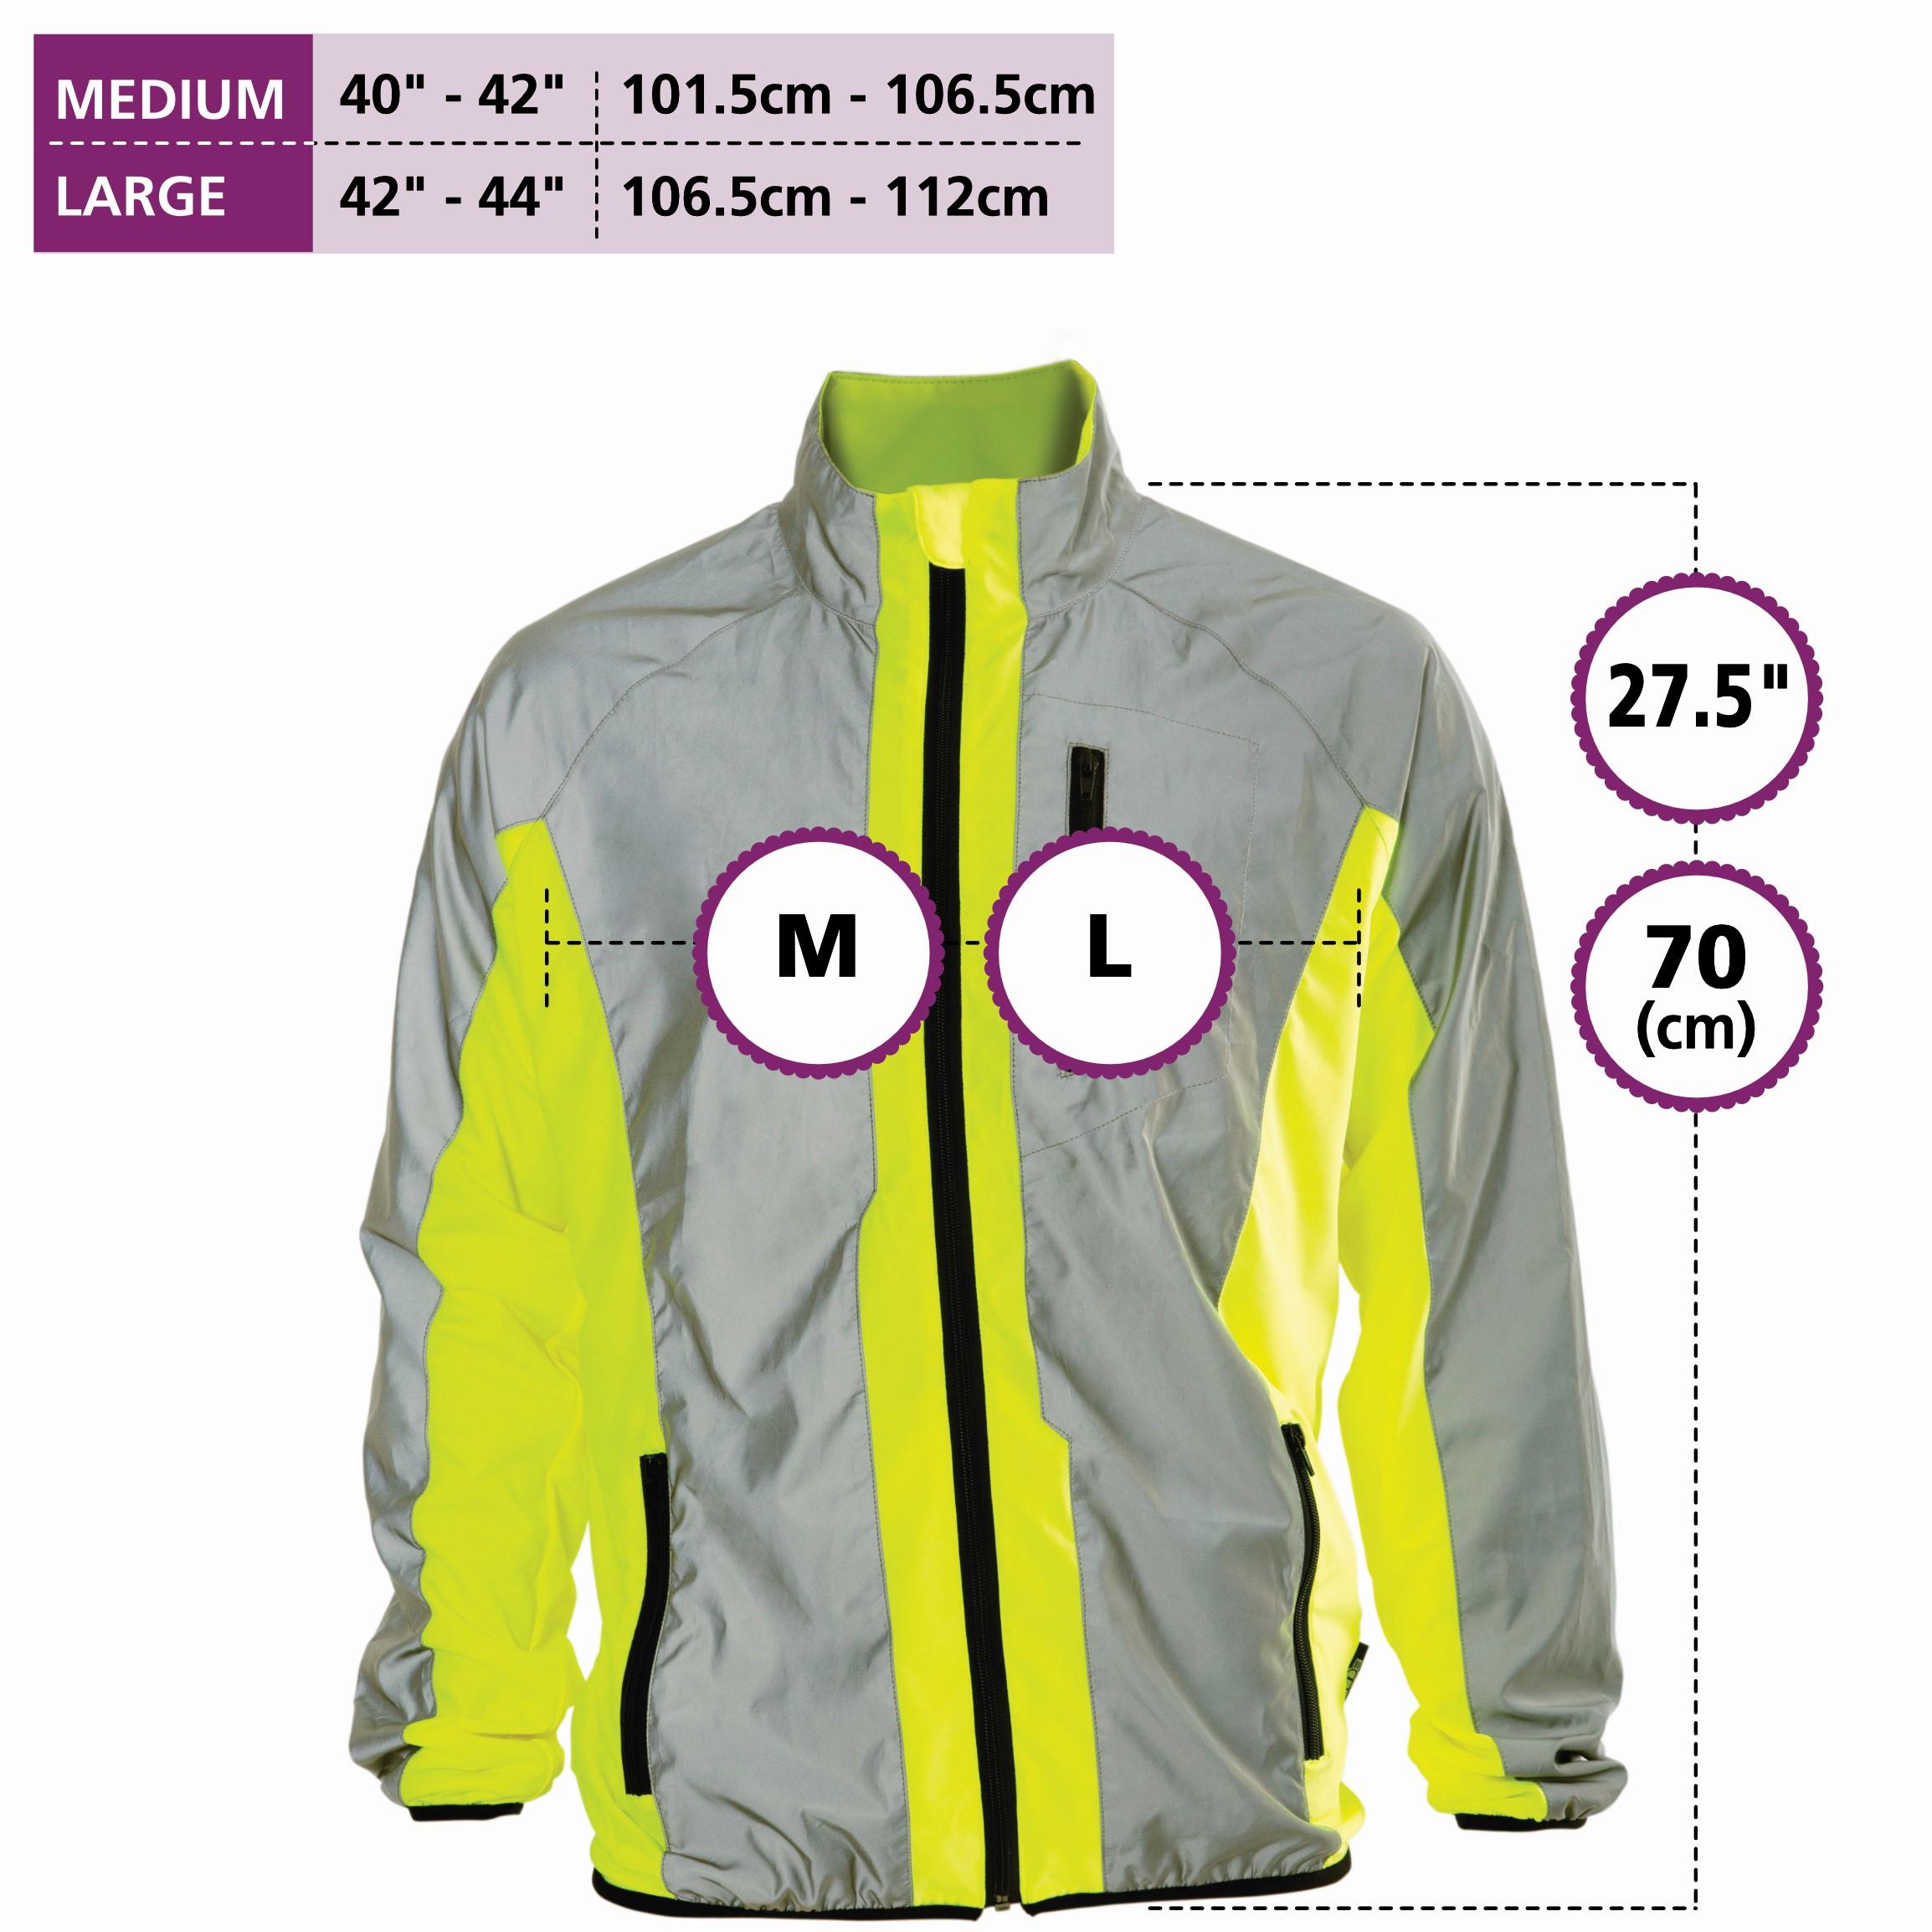 High Visibility Waterproof Reflective Cycling Running Jacket. High Viz